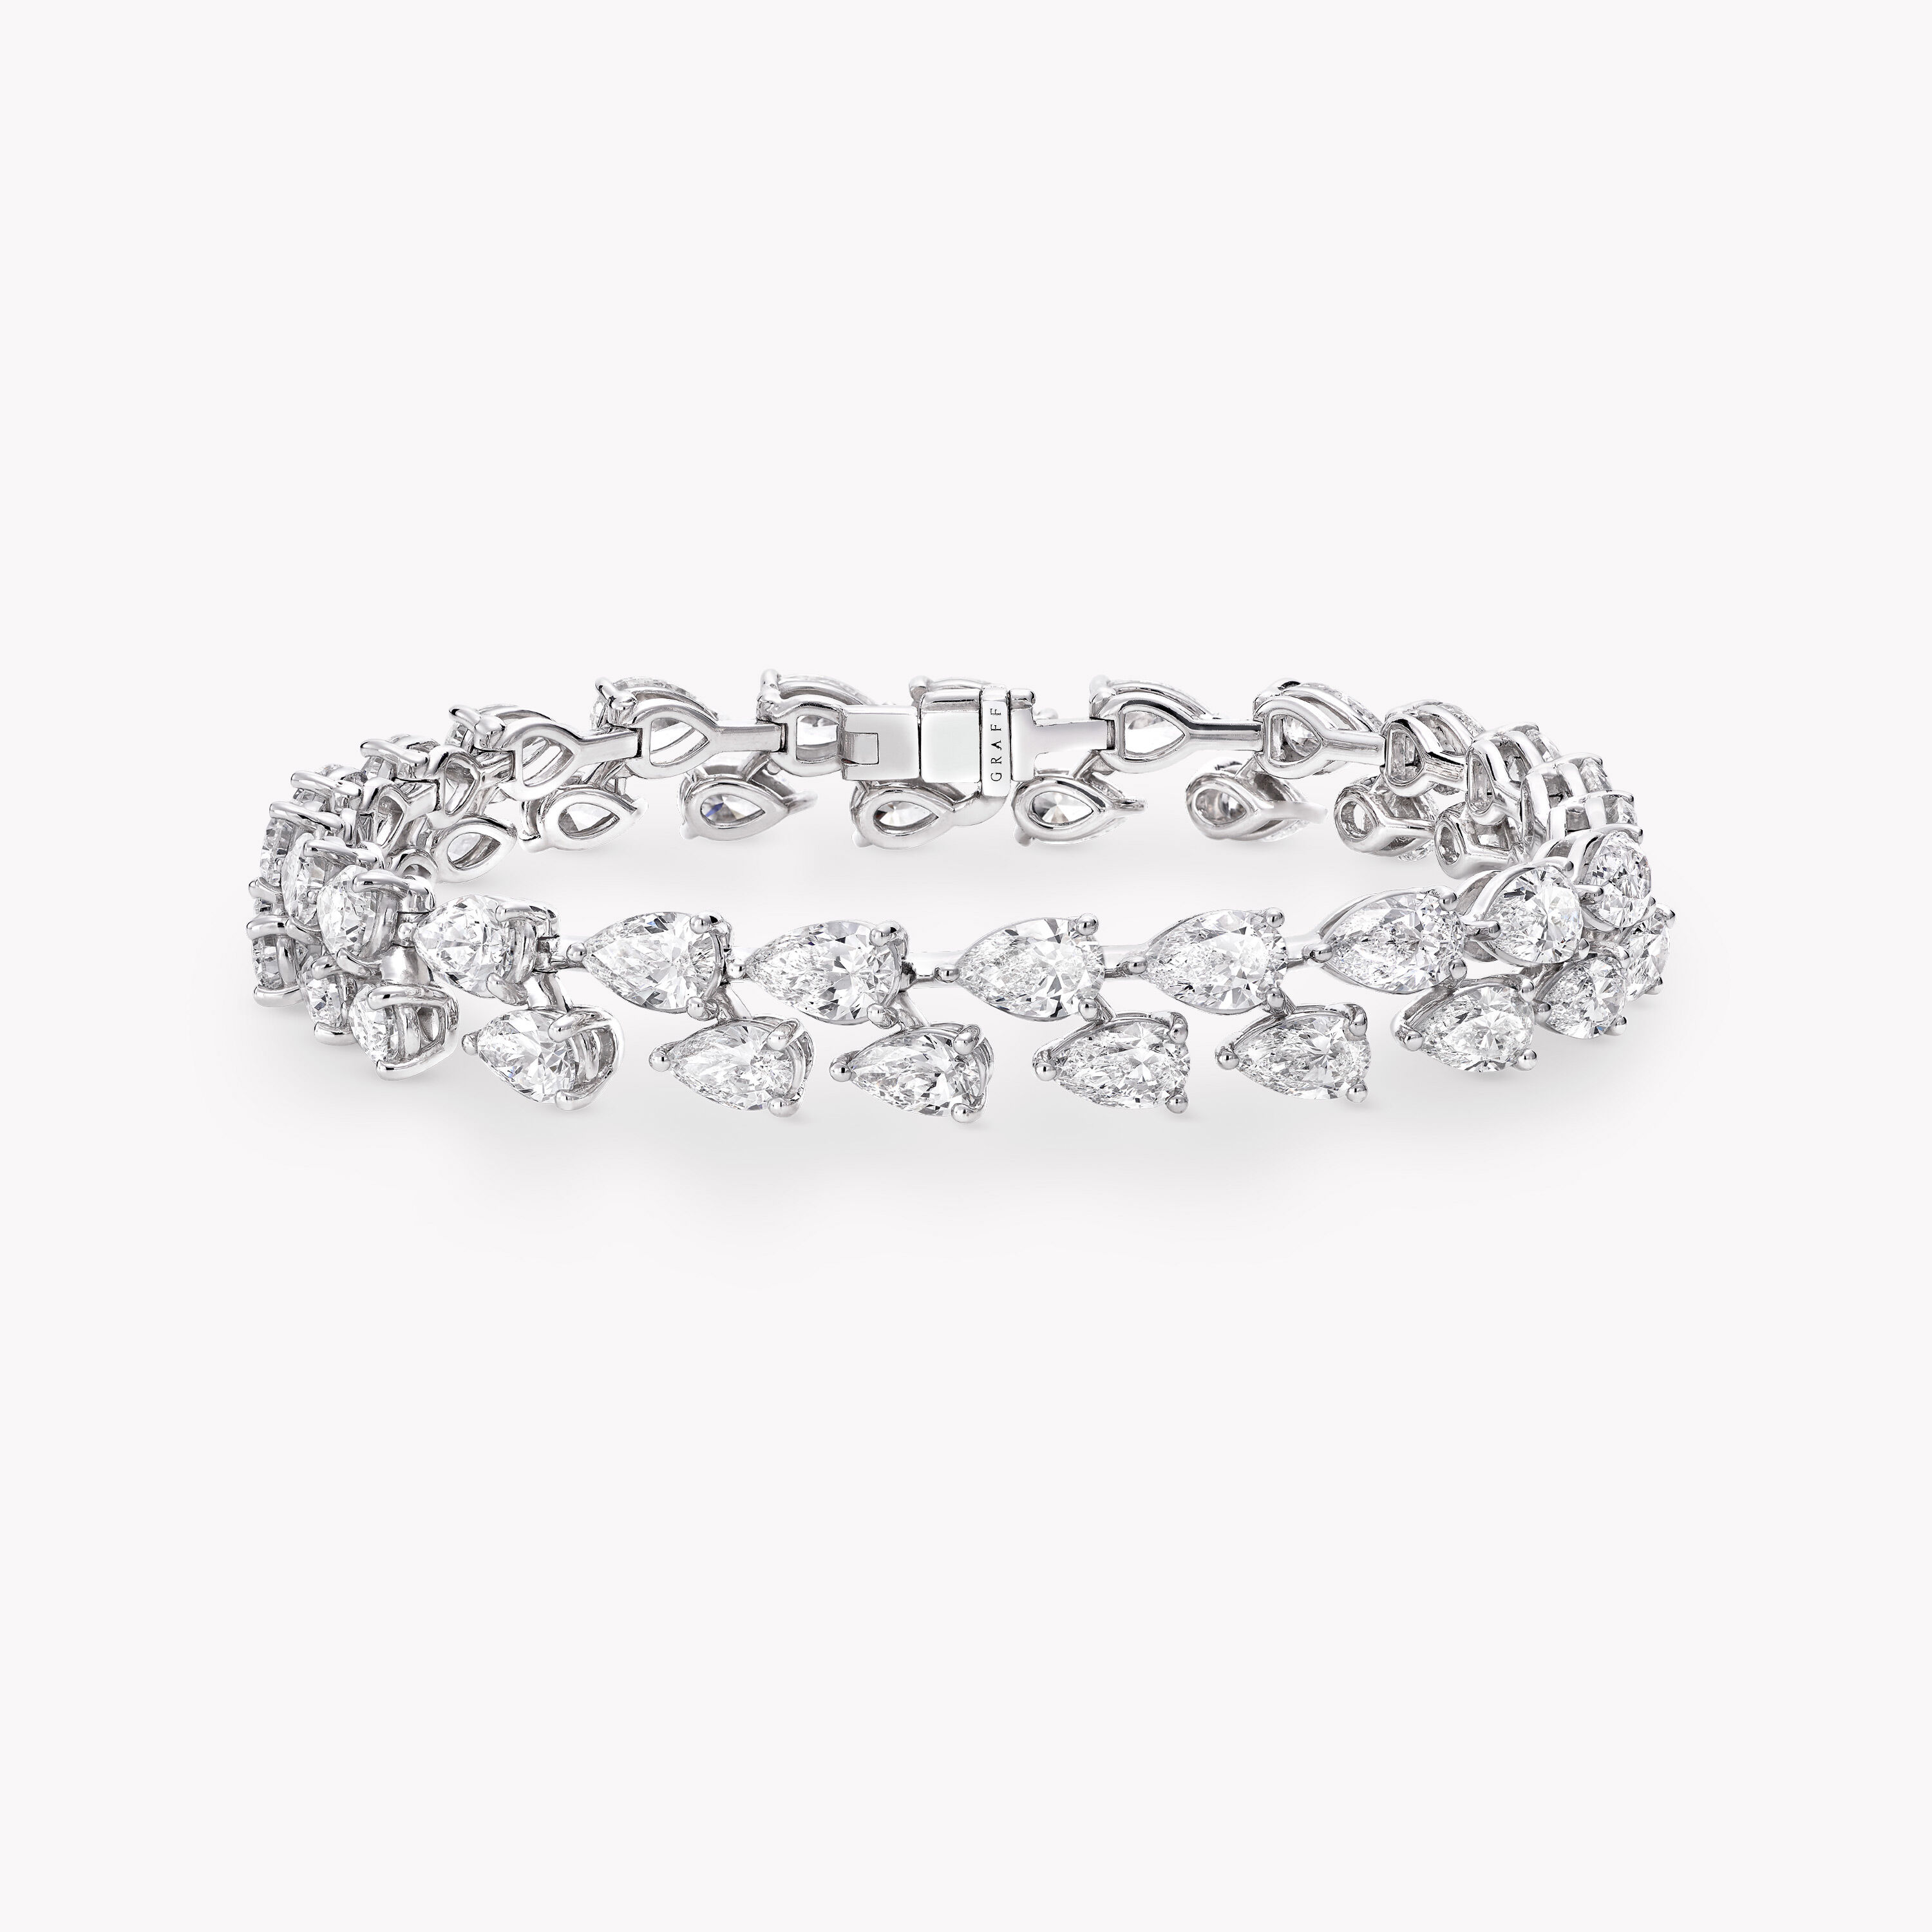 Buy Darkened Silver Steel with Diamond Pattern Links Bracelet  Inox Jewelry   Inox Jewelry India